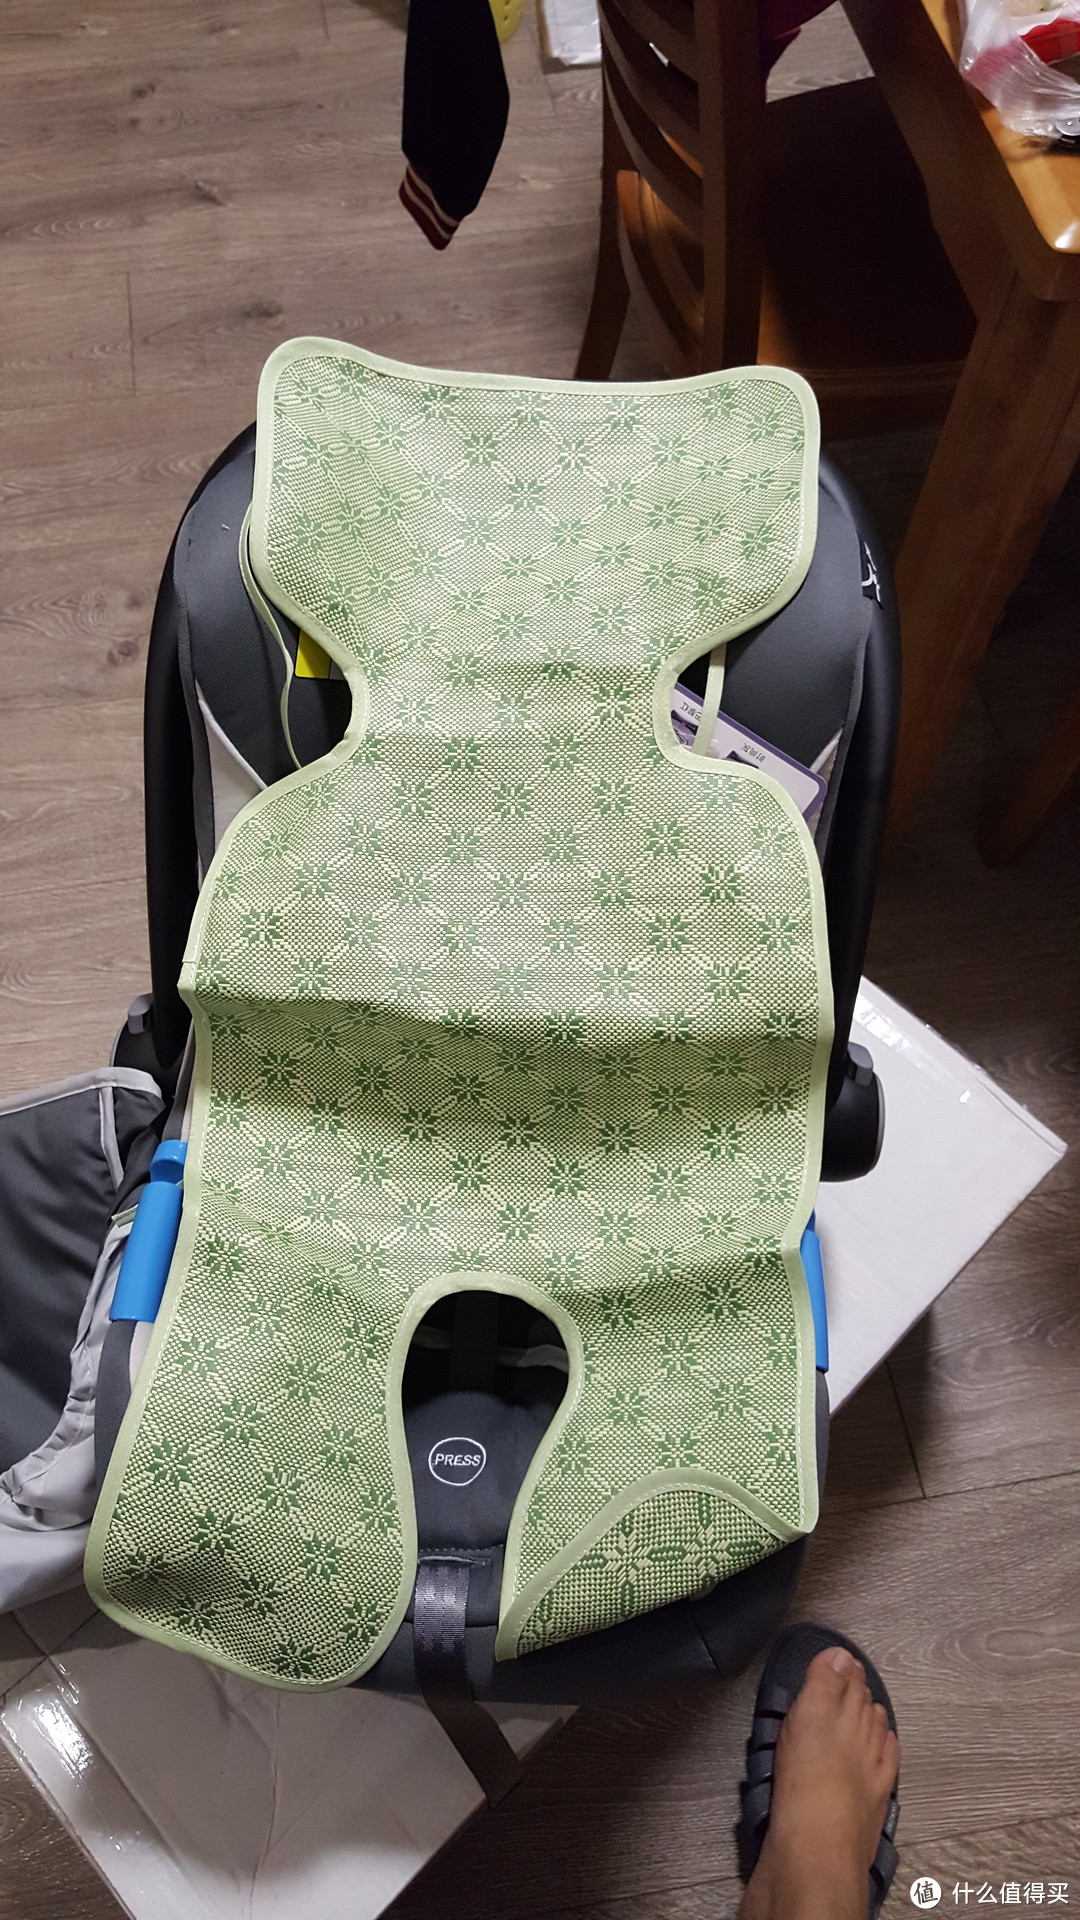 trottine 法国品牌 提篮式 婴儿安全座椅汽车